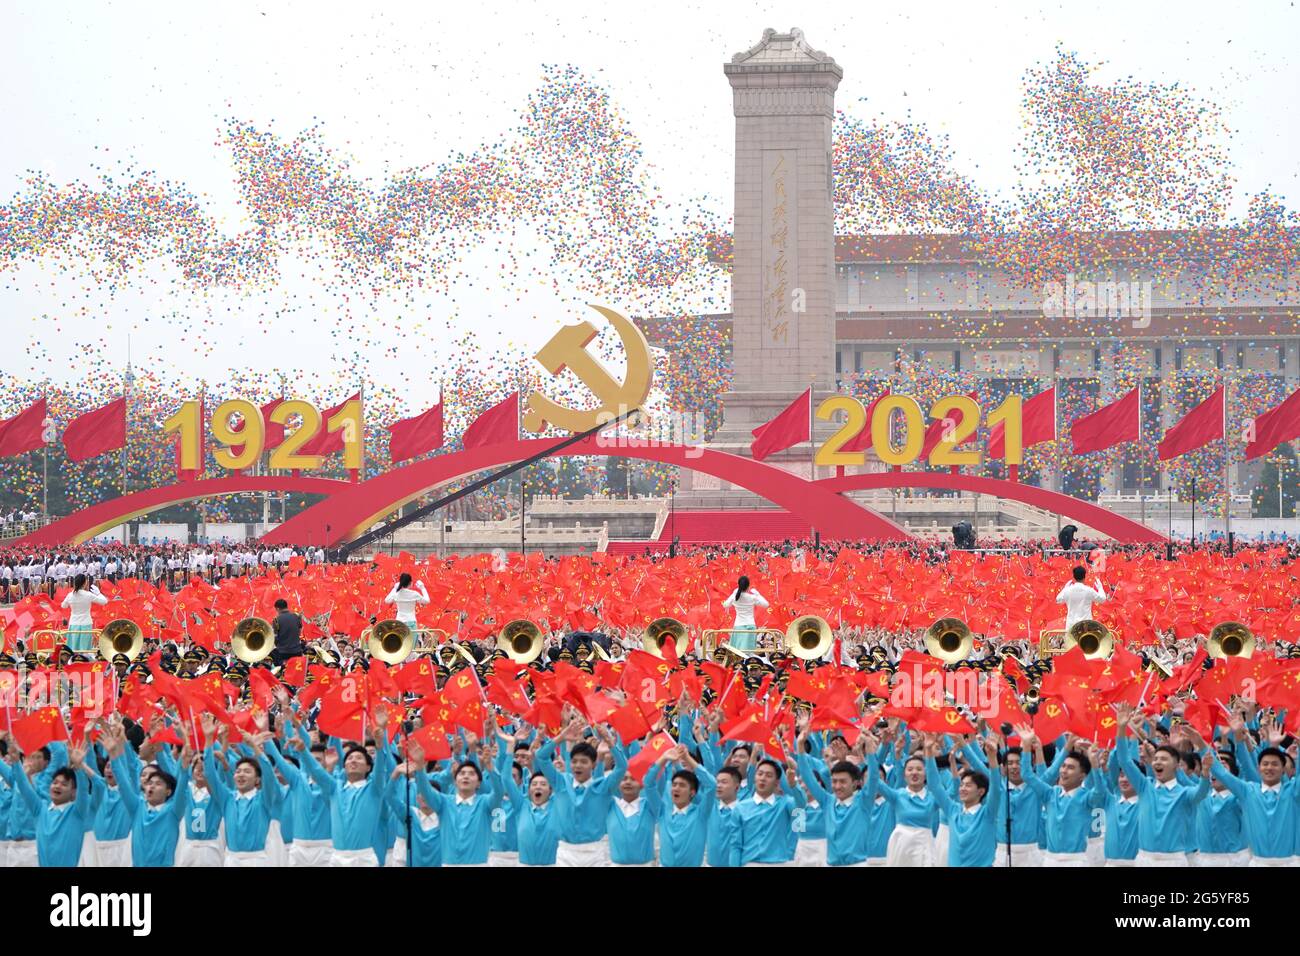 Peking, China. Juli 2021. Ballons werden während einer Zeremonie anlässlich des 100. Jahrestages der Kommunistischen Partei Chinas (KPCh) am 1. Juli 2021 auf dem Tian'anmen-Platz in Peking, der Hauptstadt Chinas, freigelassen. Quelle: Chen Yehua/Xinhua/Alamy Live News Stockfoto